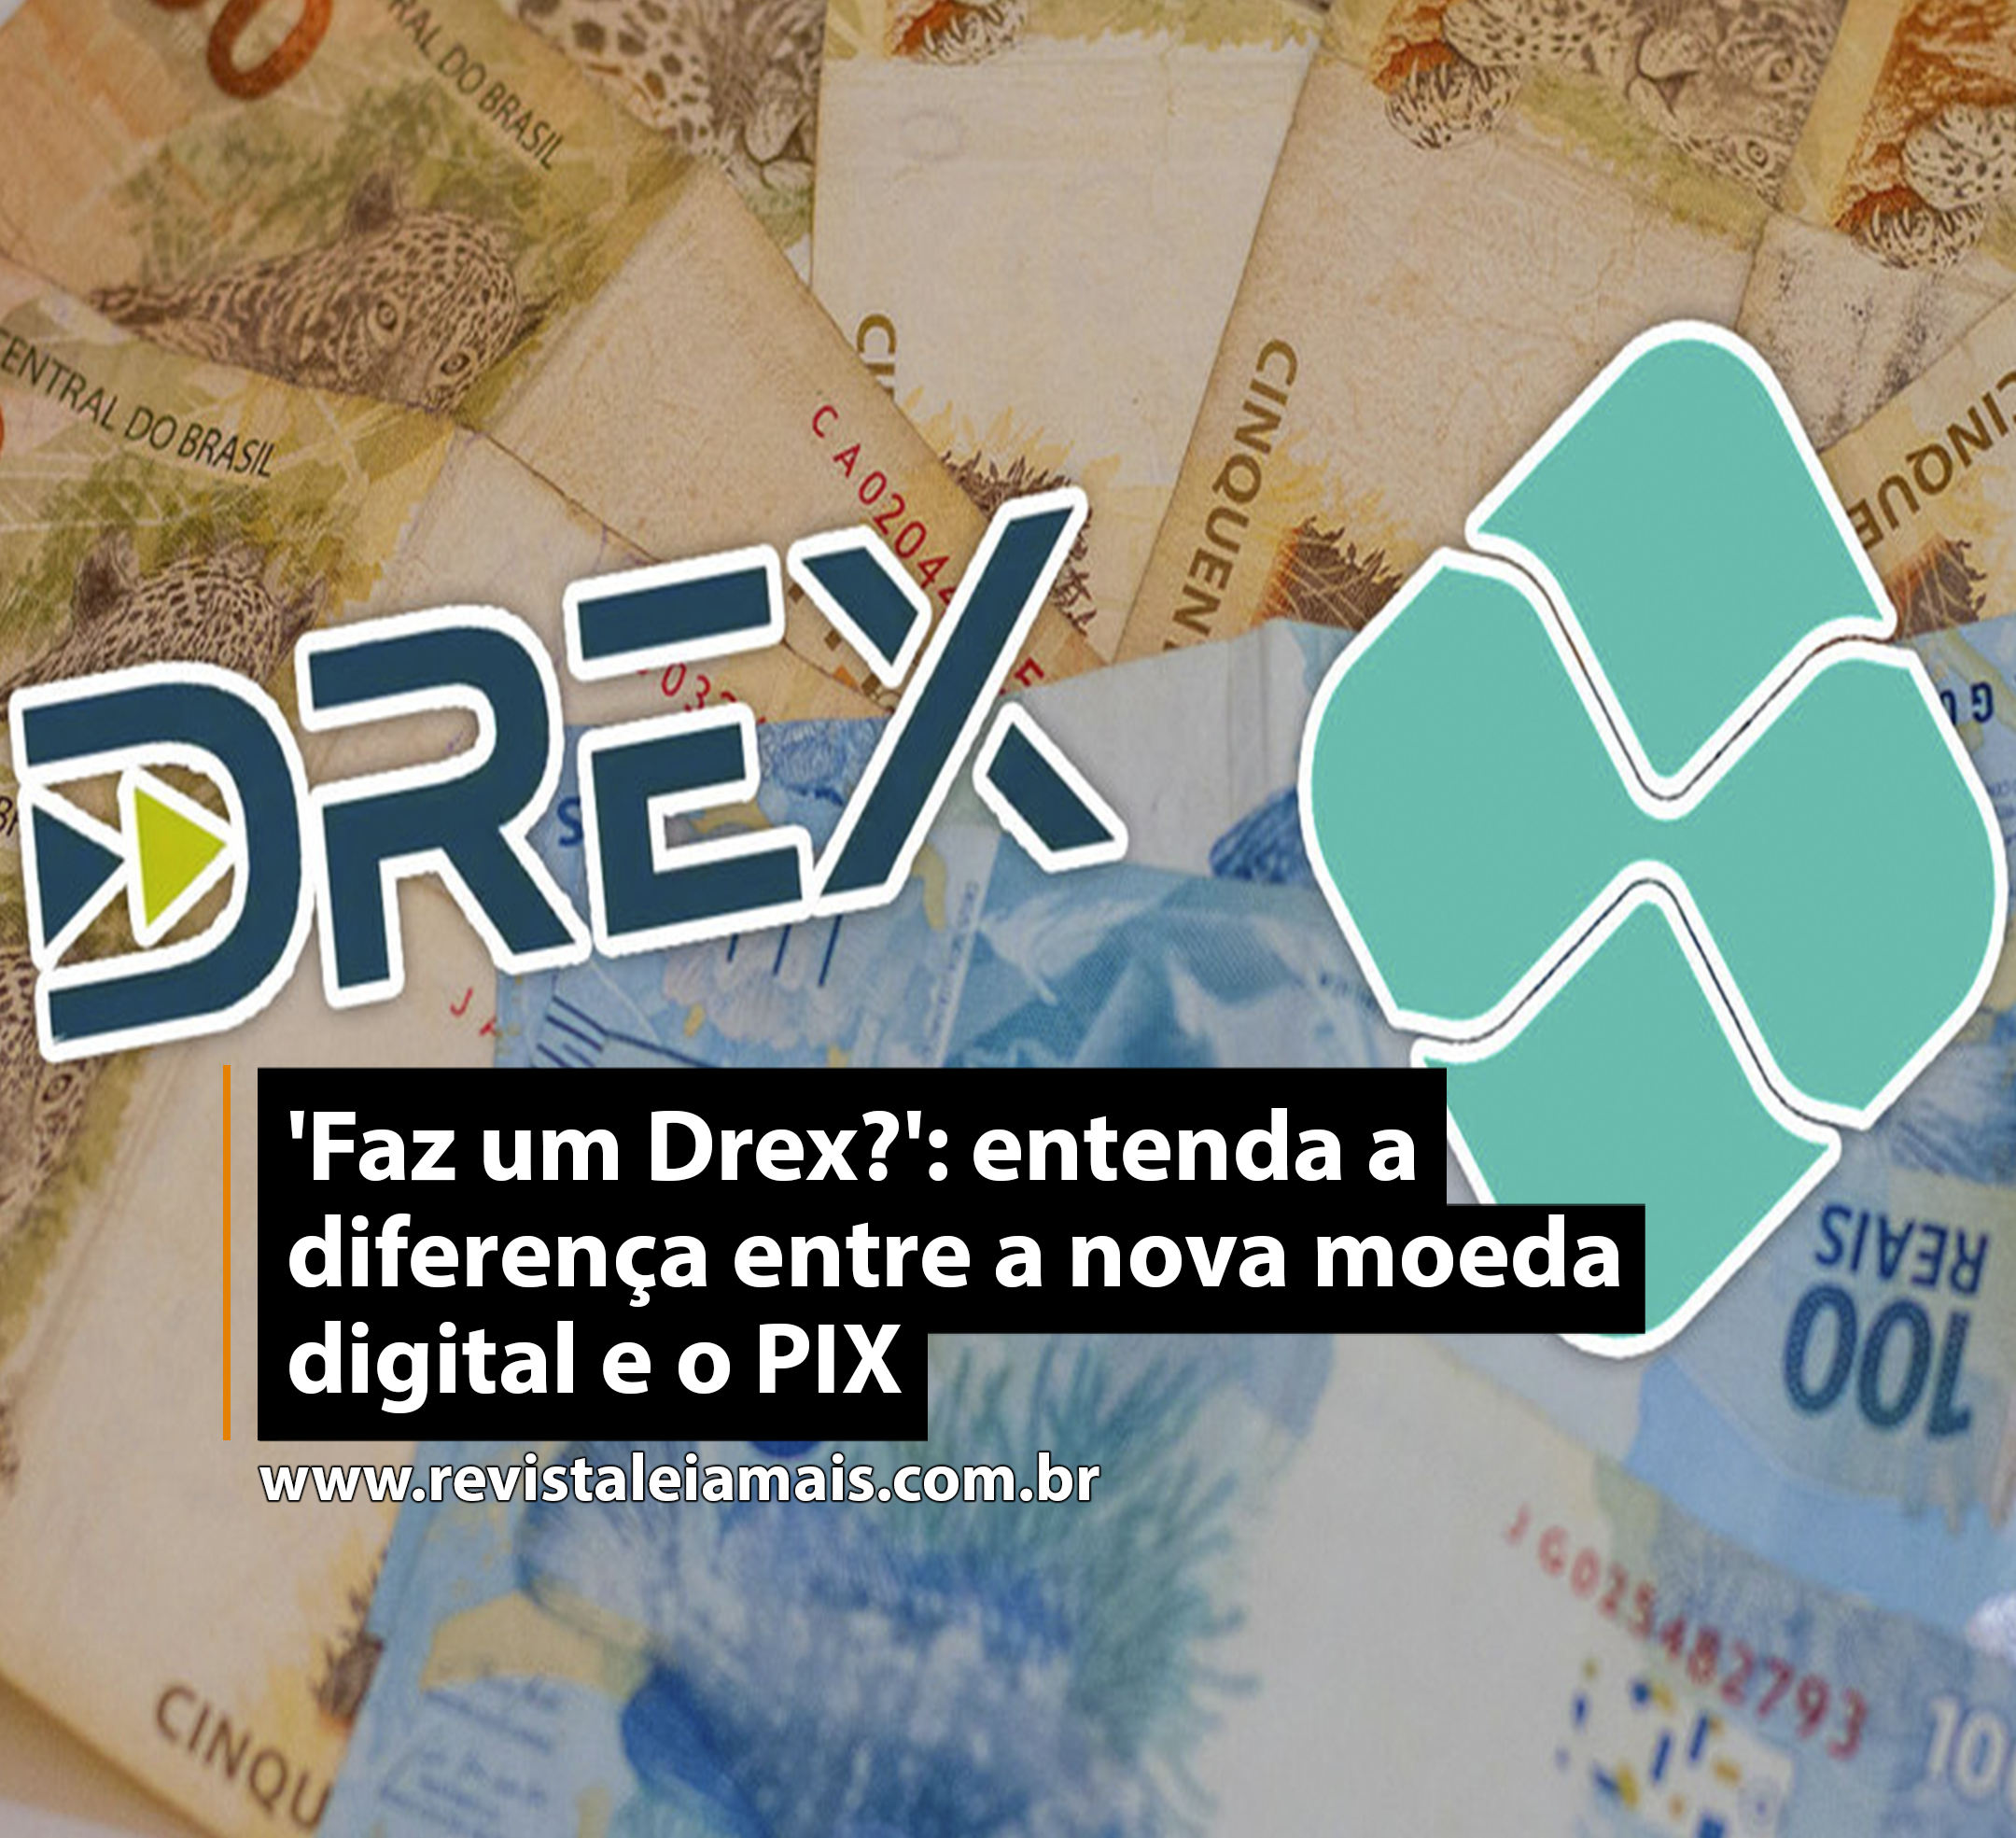 'Faz um Drex?': entenda a diferença entre a nova moeda digital e o PIX